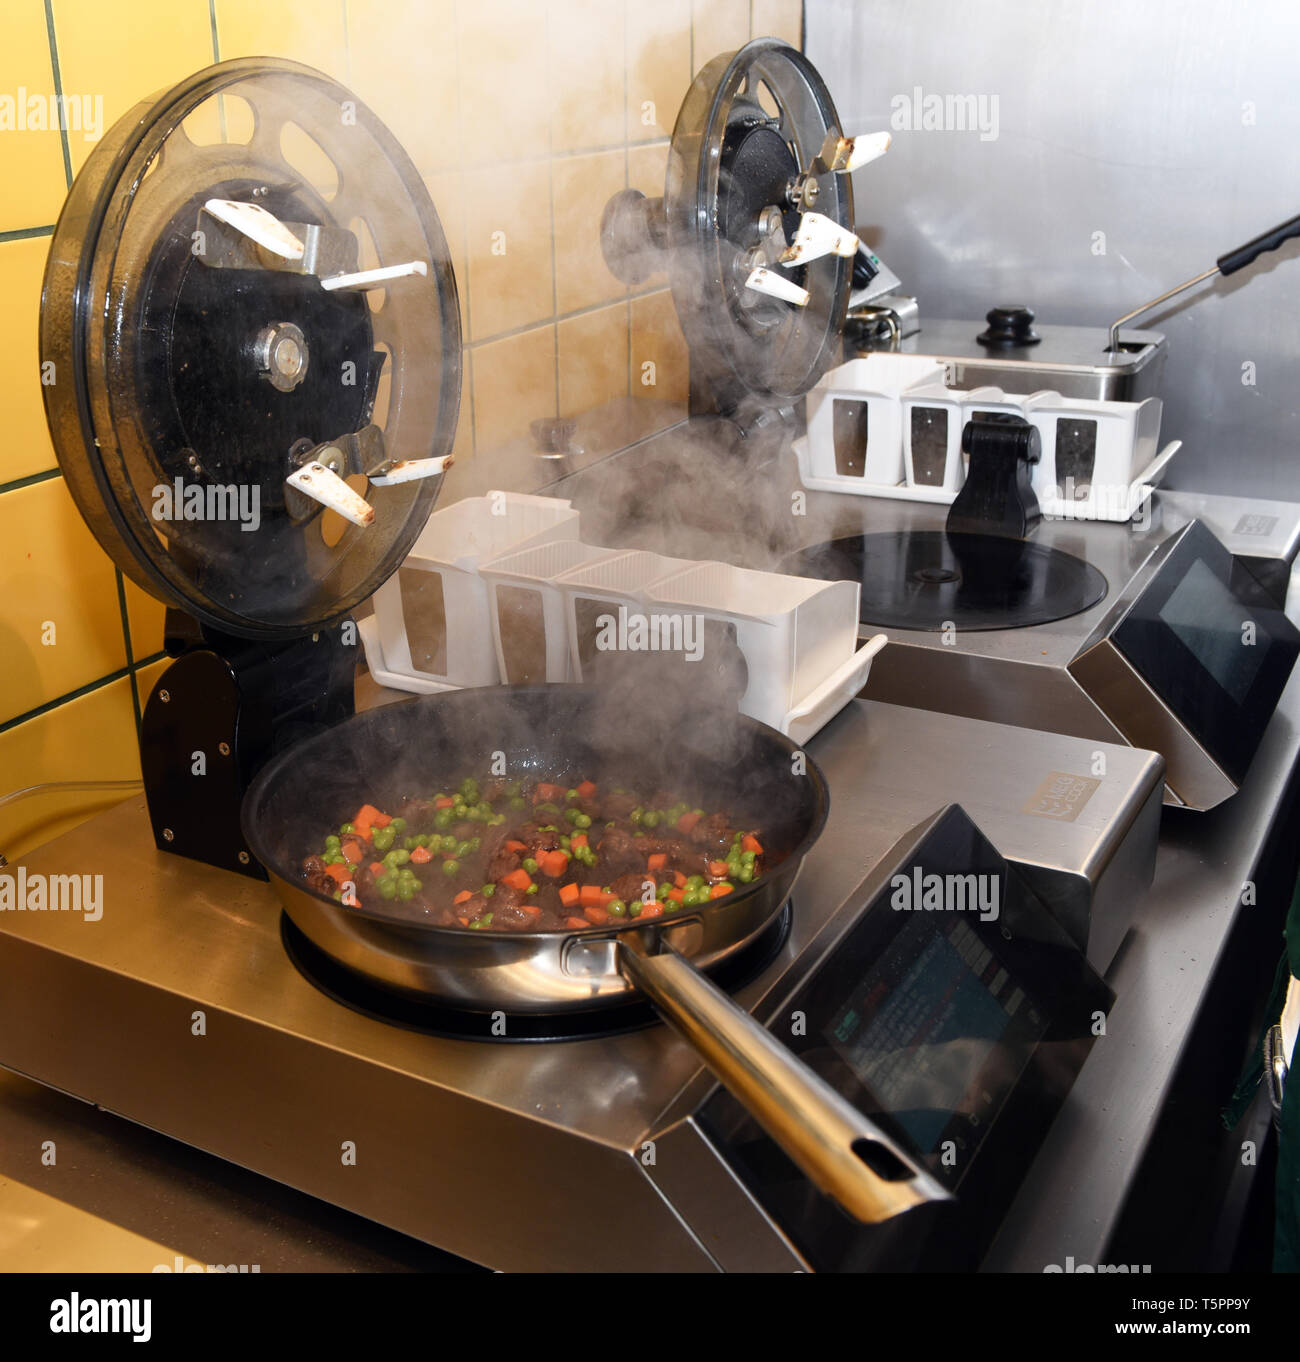 Düsseldorf, Deutschland. 26 Apr, 2019. Kochen Roboter stehen im China Snack  Bar'Ai Wok'. Diejenigen, die hier Essen nicht sehen, ein Koch, weil hier  vier Roboter kochen für die Gäste. Innerhalb von ein